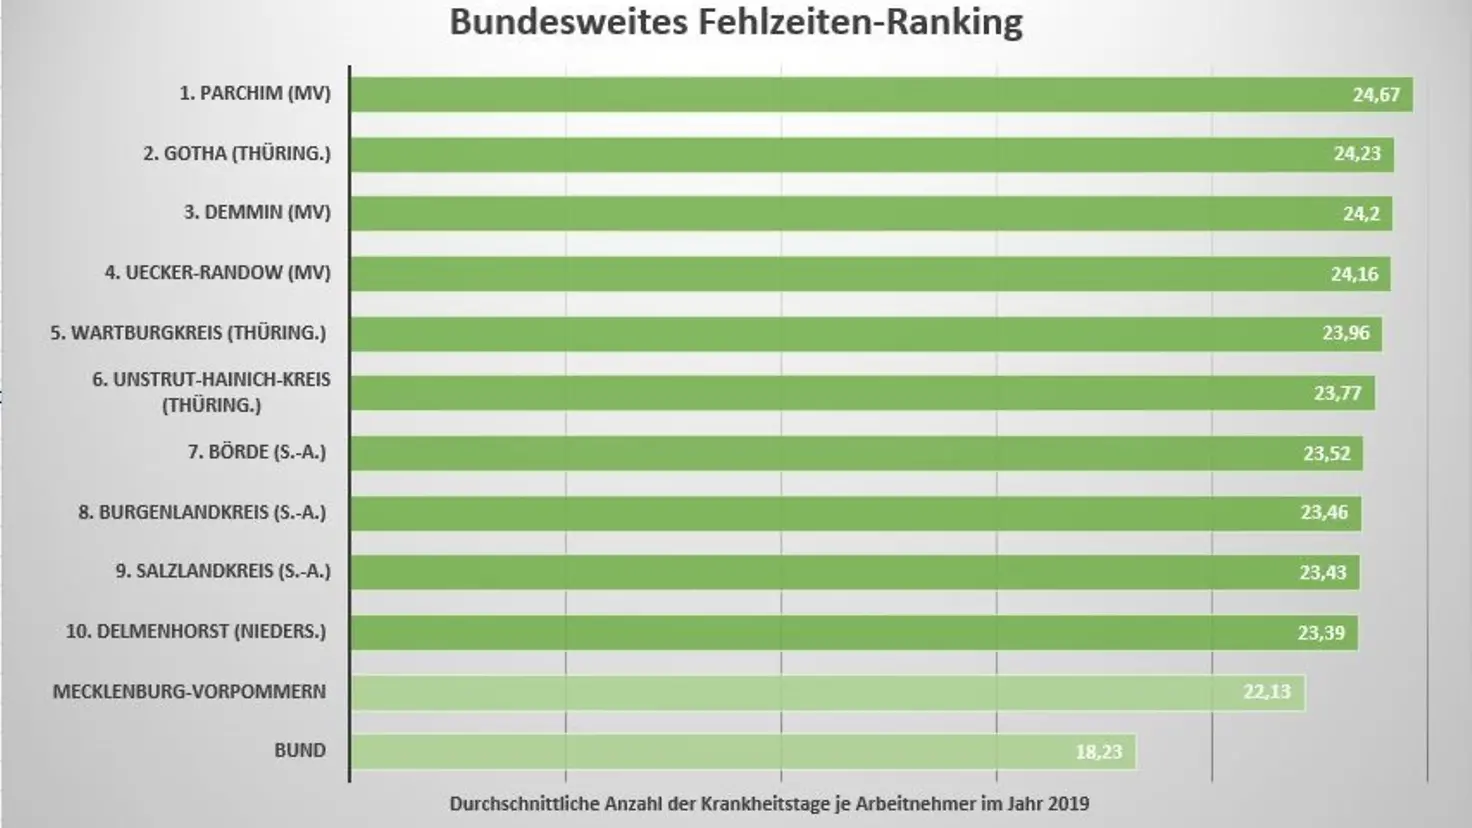 Die Grafik zeigt die ersten 10 Plätze des Fehlzeiten-Rankings. Nach Parchim folgen Gotha und Demmin.